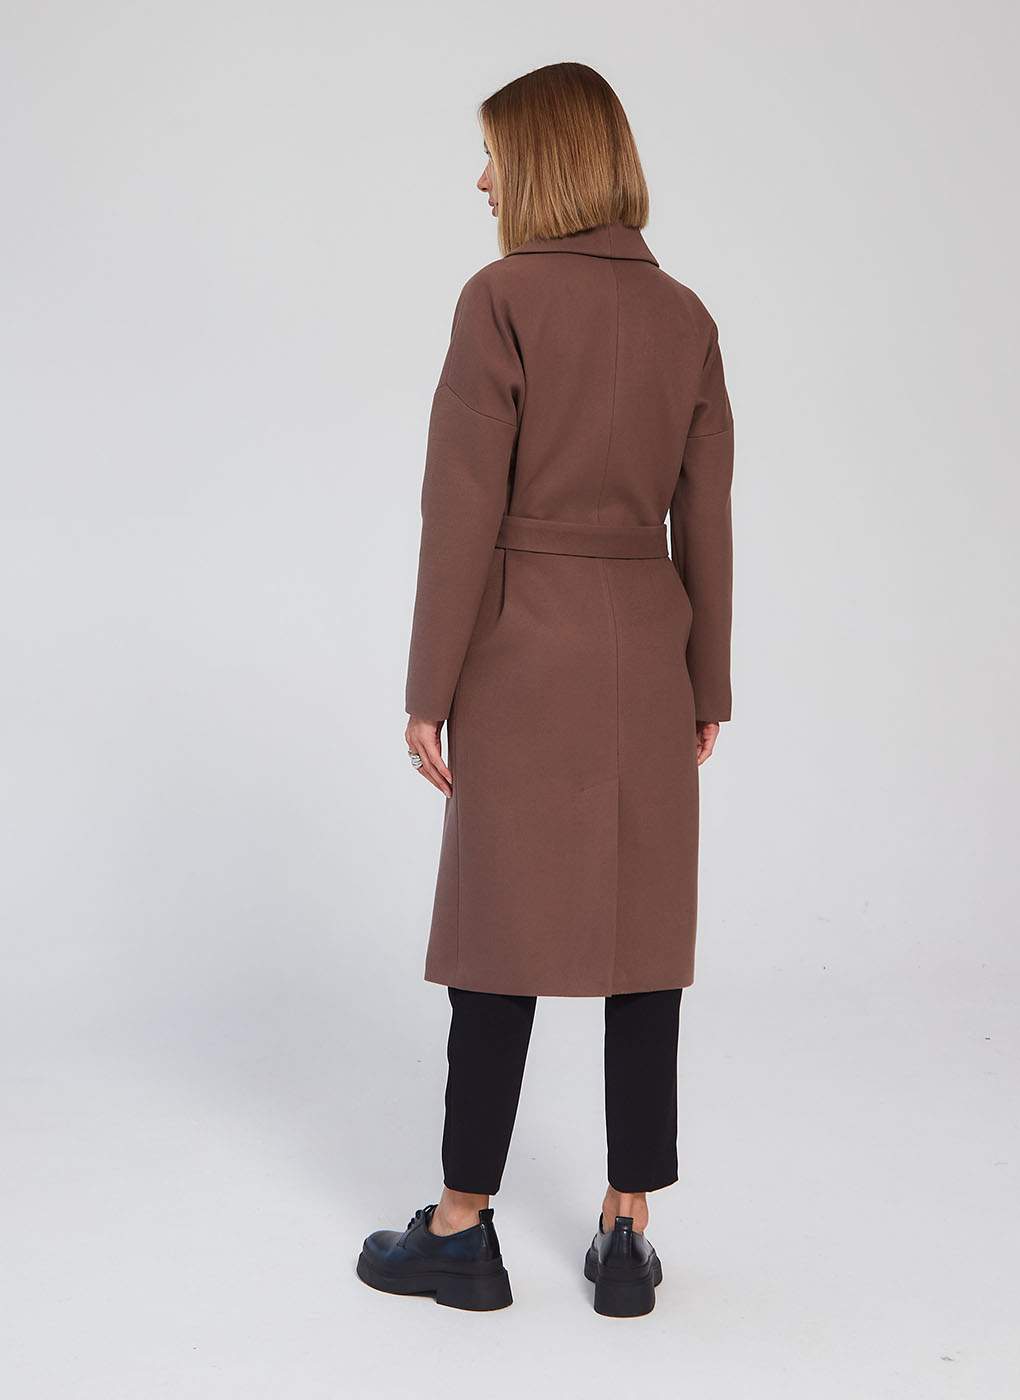 Пальто женское Giulia Rosetti 56204 коричневое 42 RU